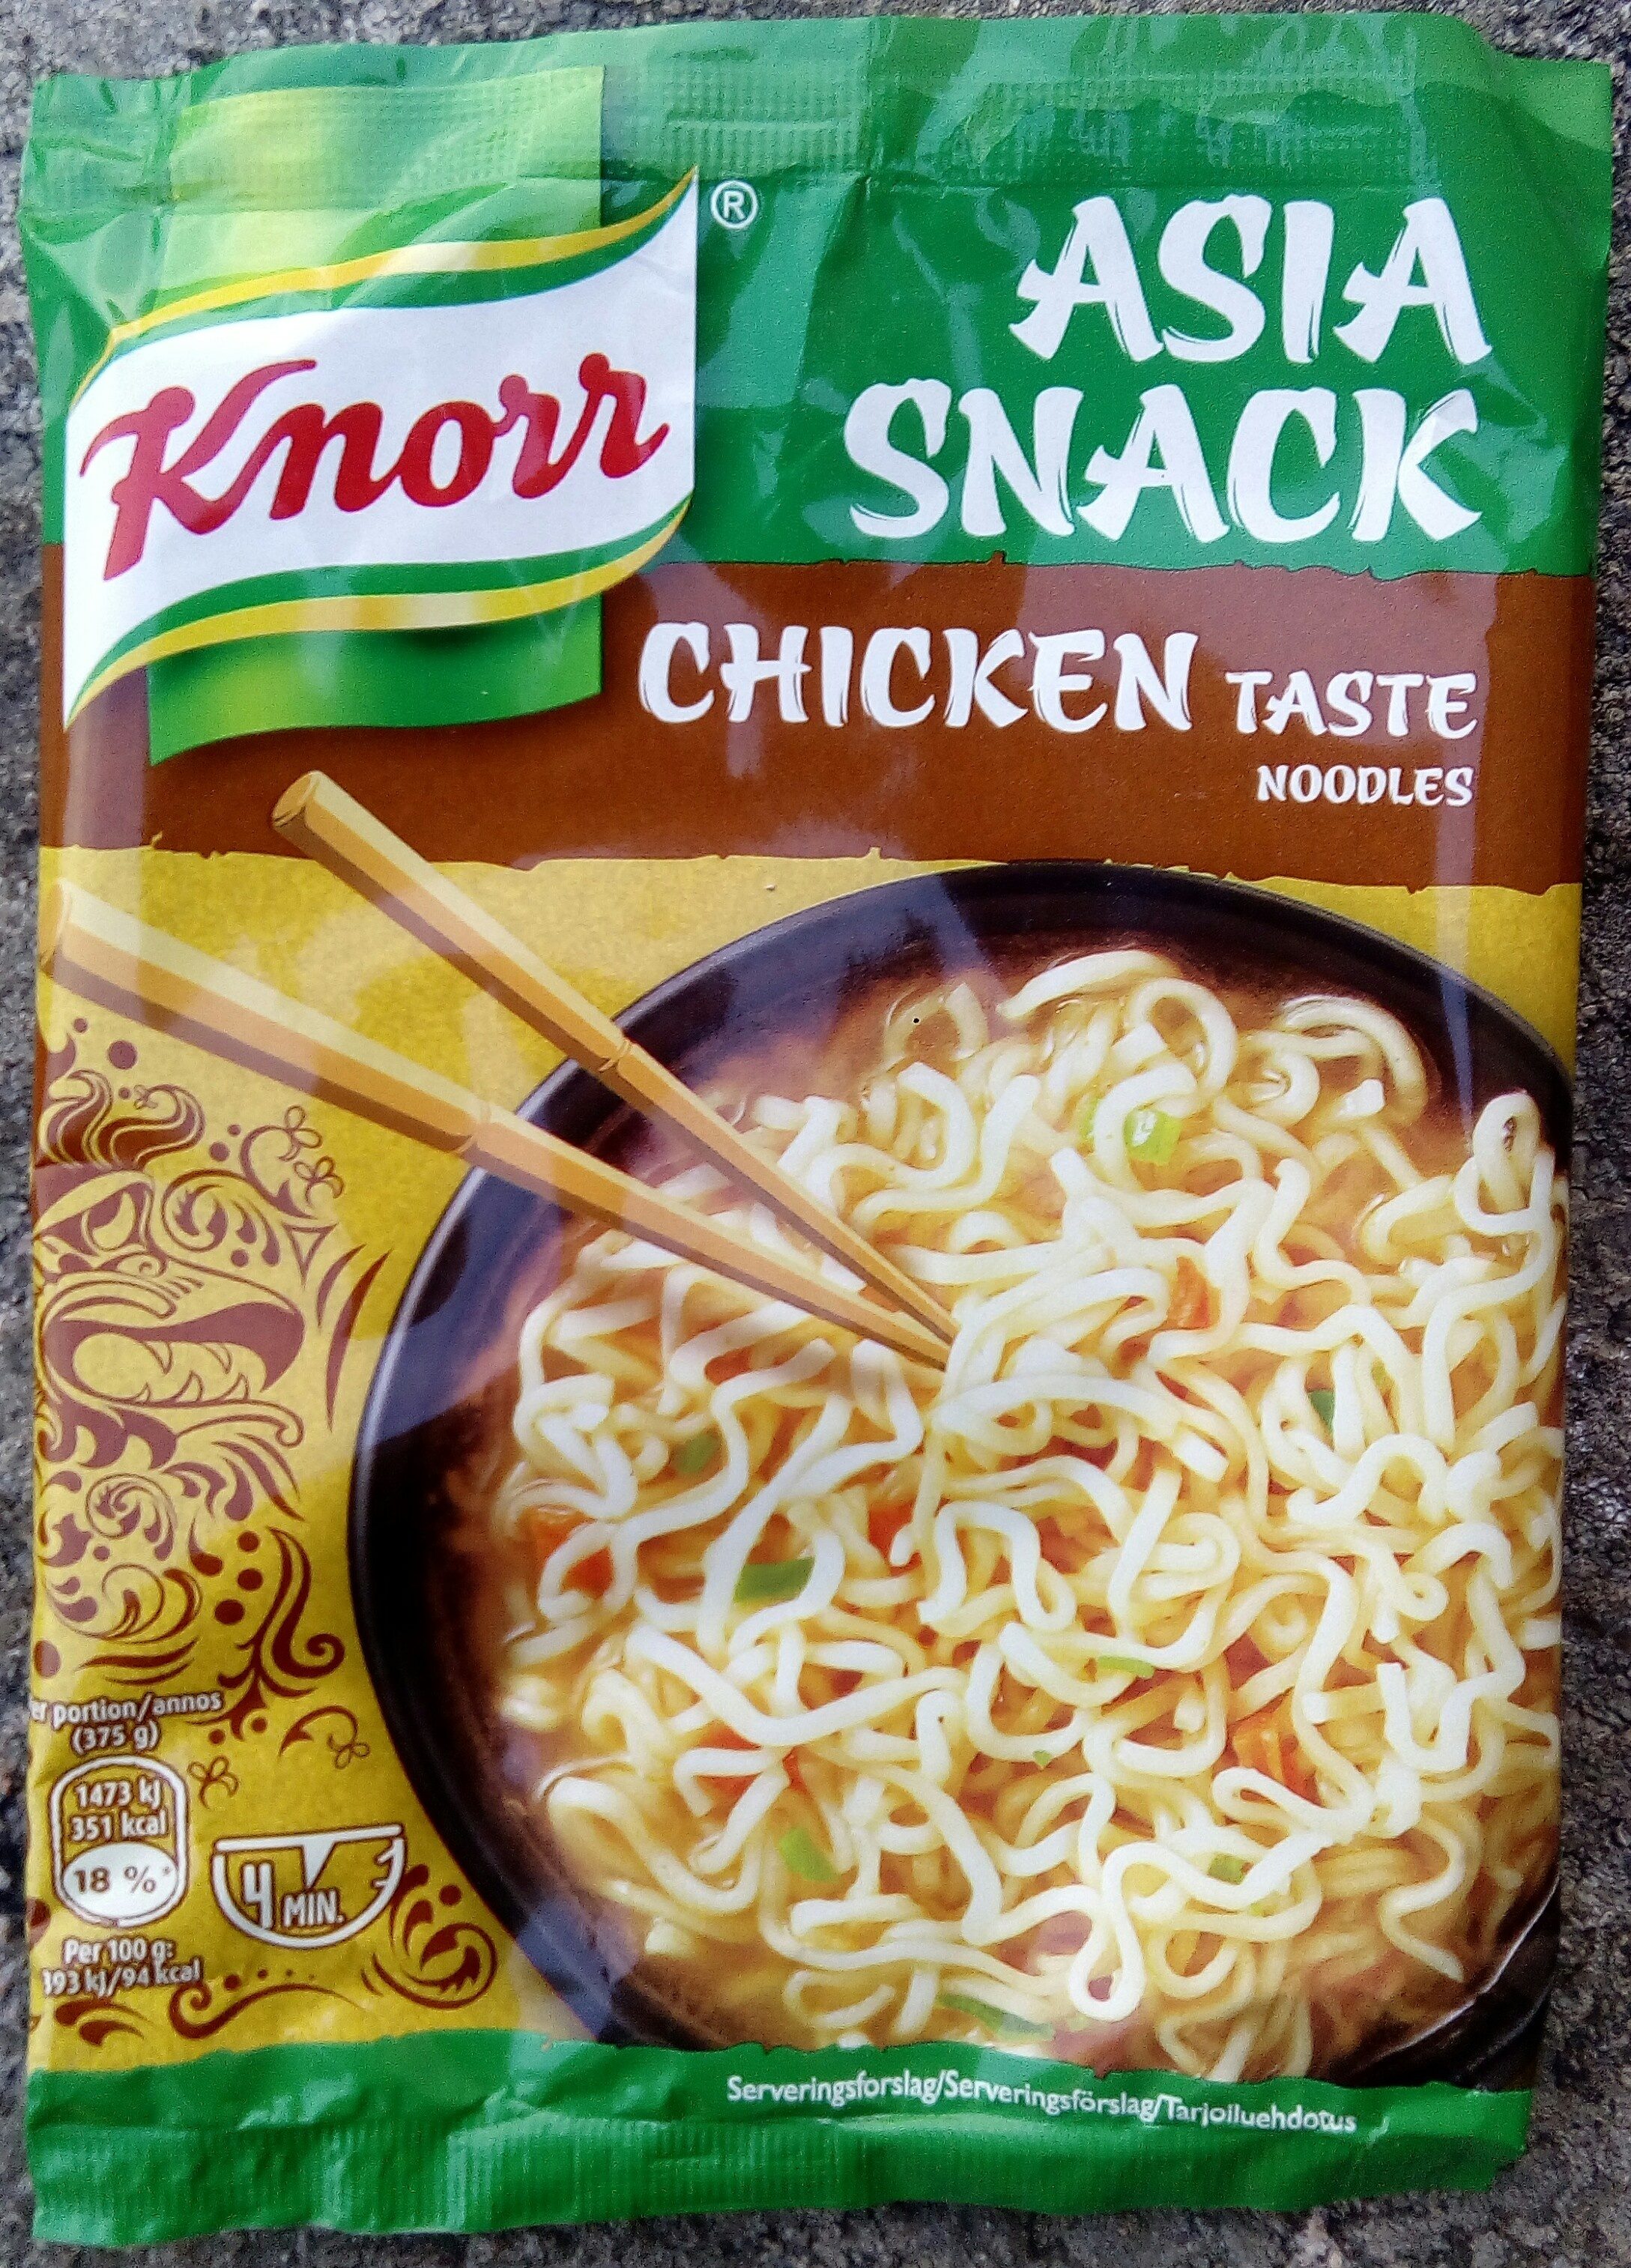 Knorr Asia Snack Chicken Taste Noodles - Produkt